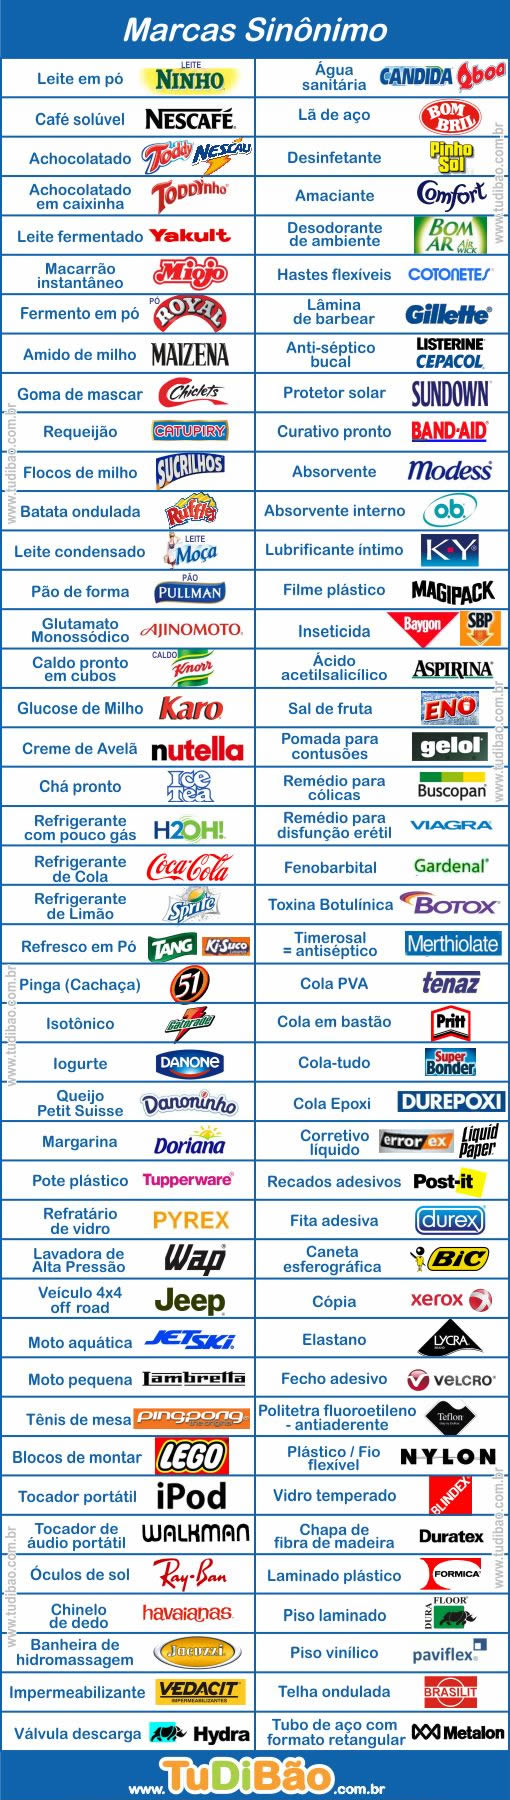 Tabela - Marcas que são sinónimos de produtos por Silvia Zampar